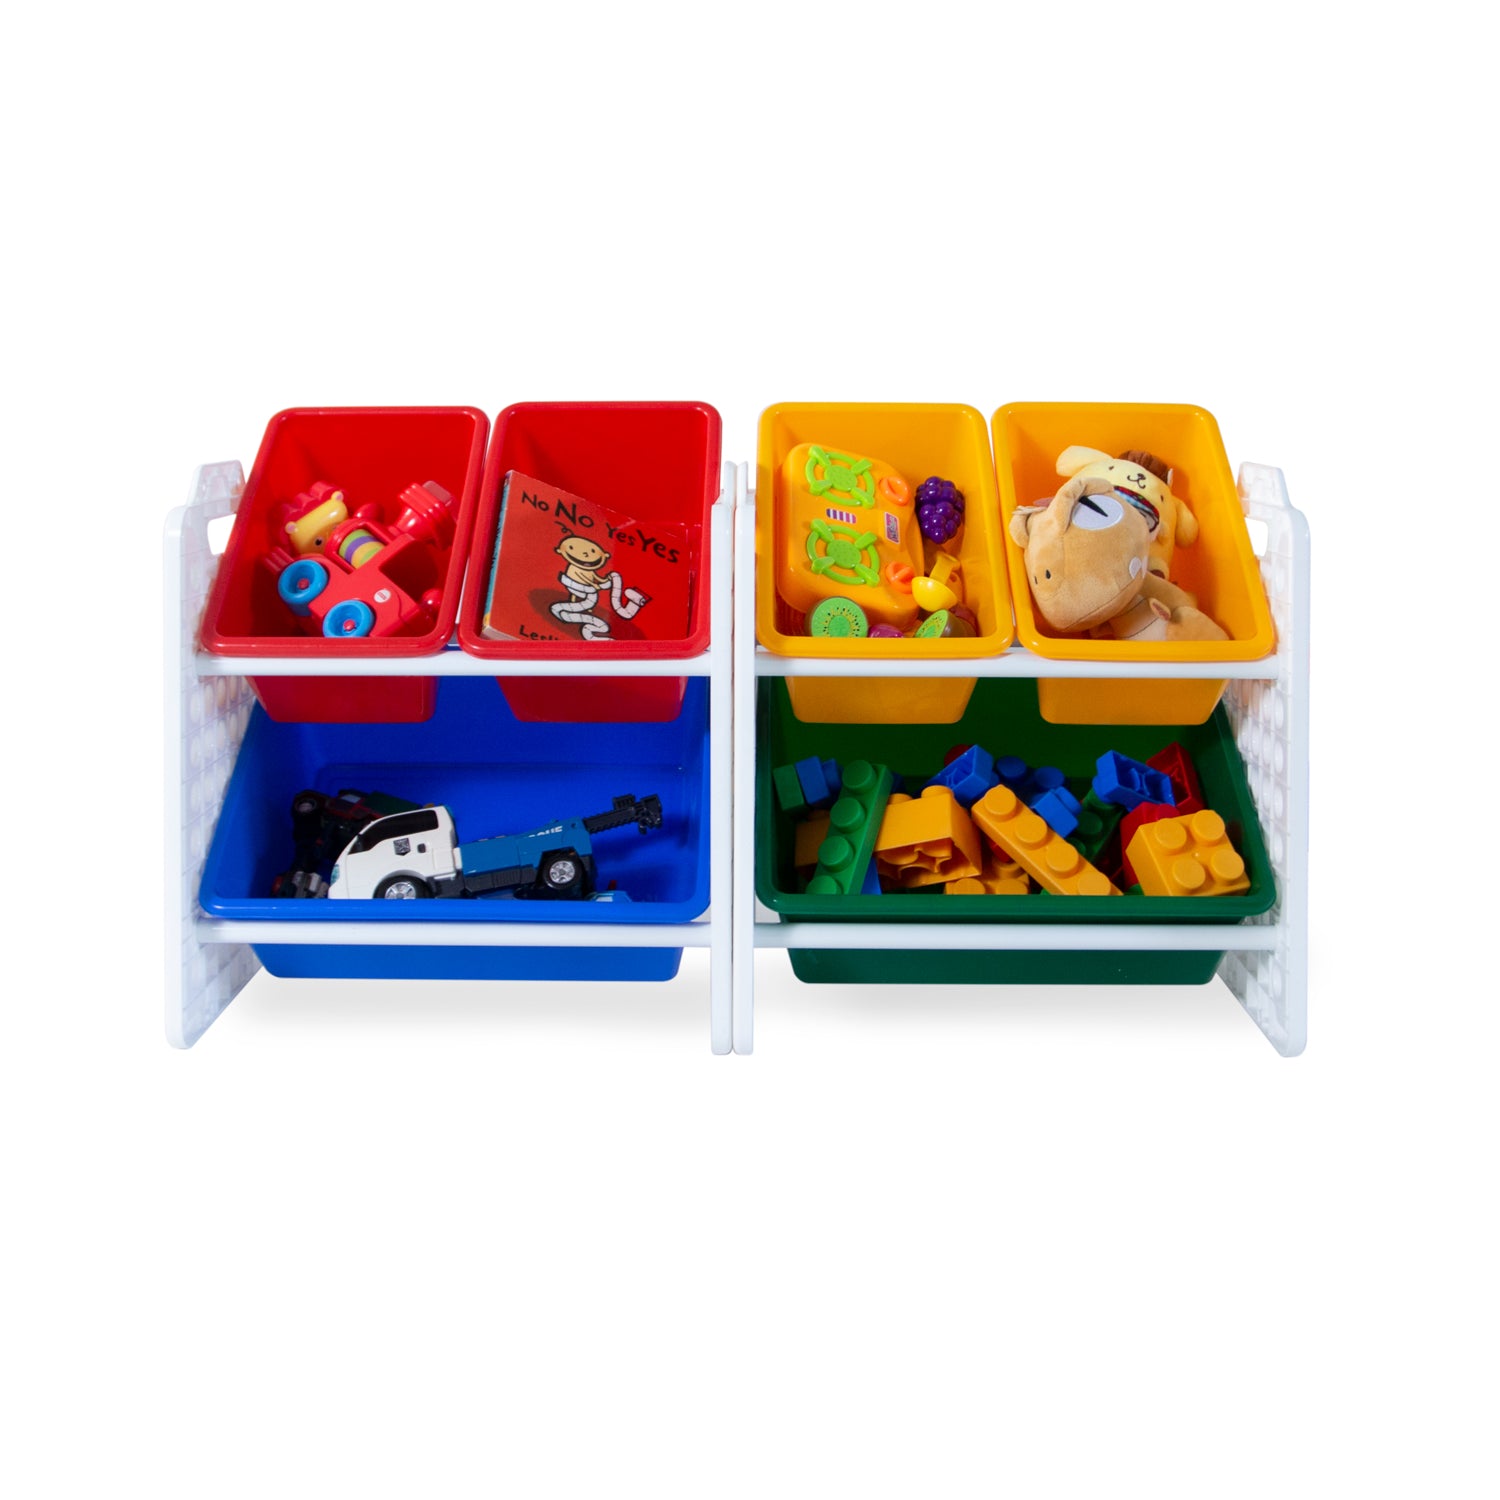 UNiPLAY 6 Bins Toy Storage Organizer - Primary (UB45521)